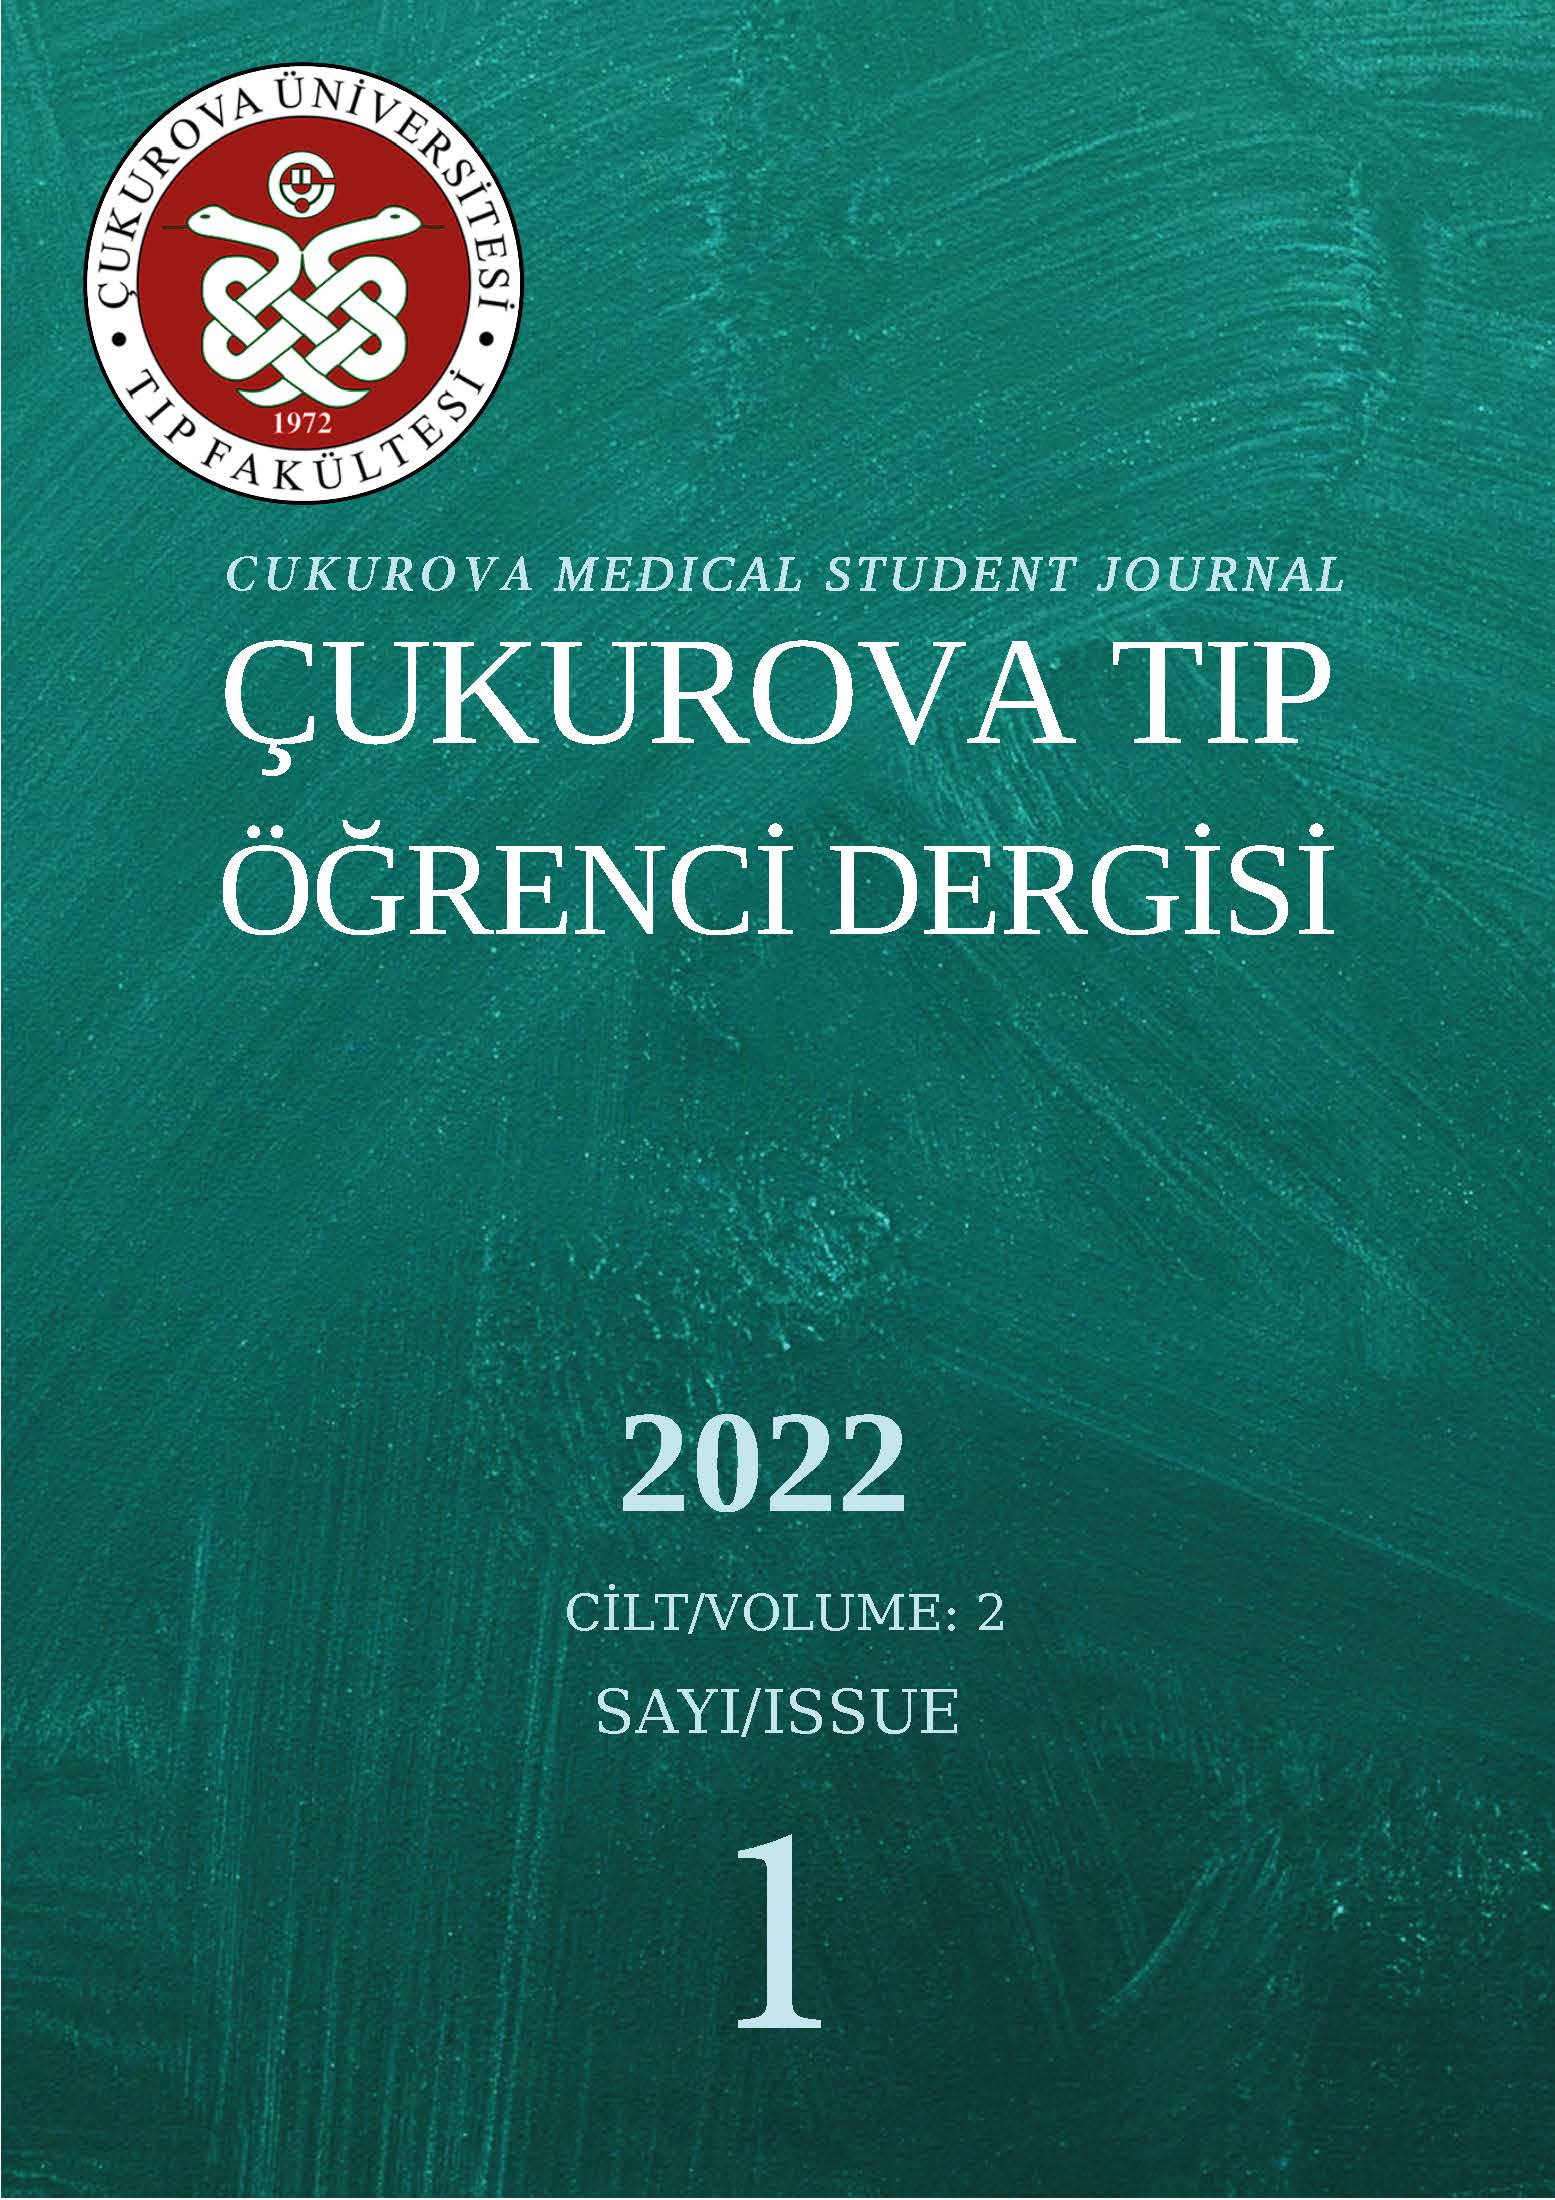 Çukurova Tıp Öğrenci Dergisi 2023 yılı 2. sayısı yayınlandı.